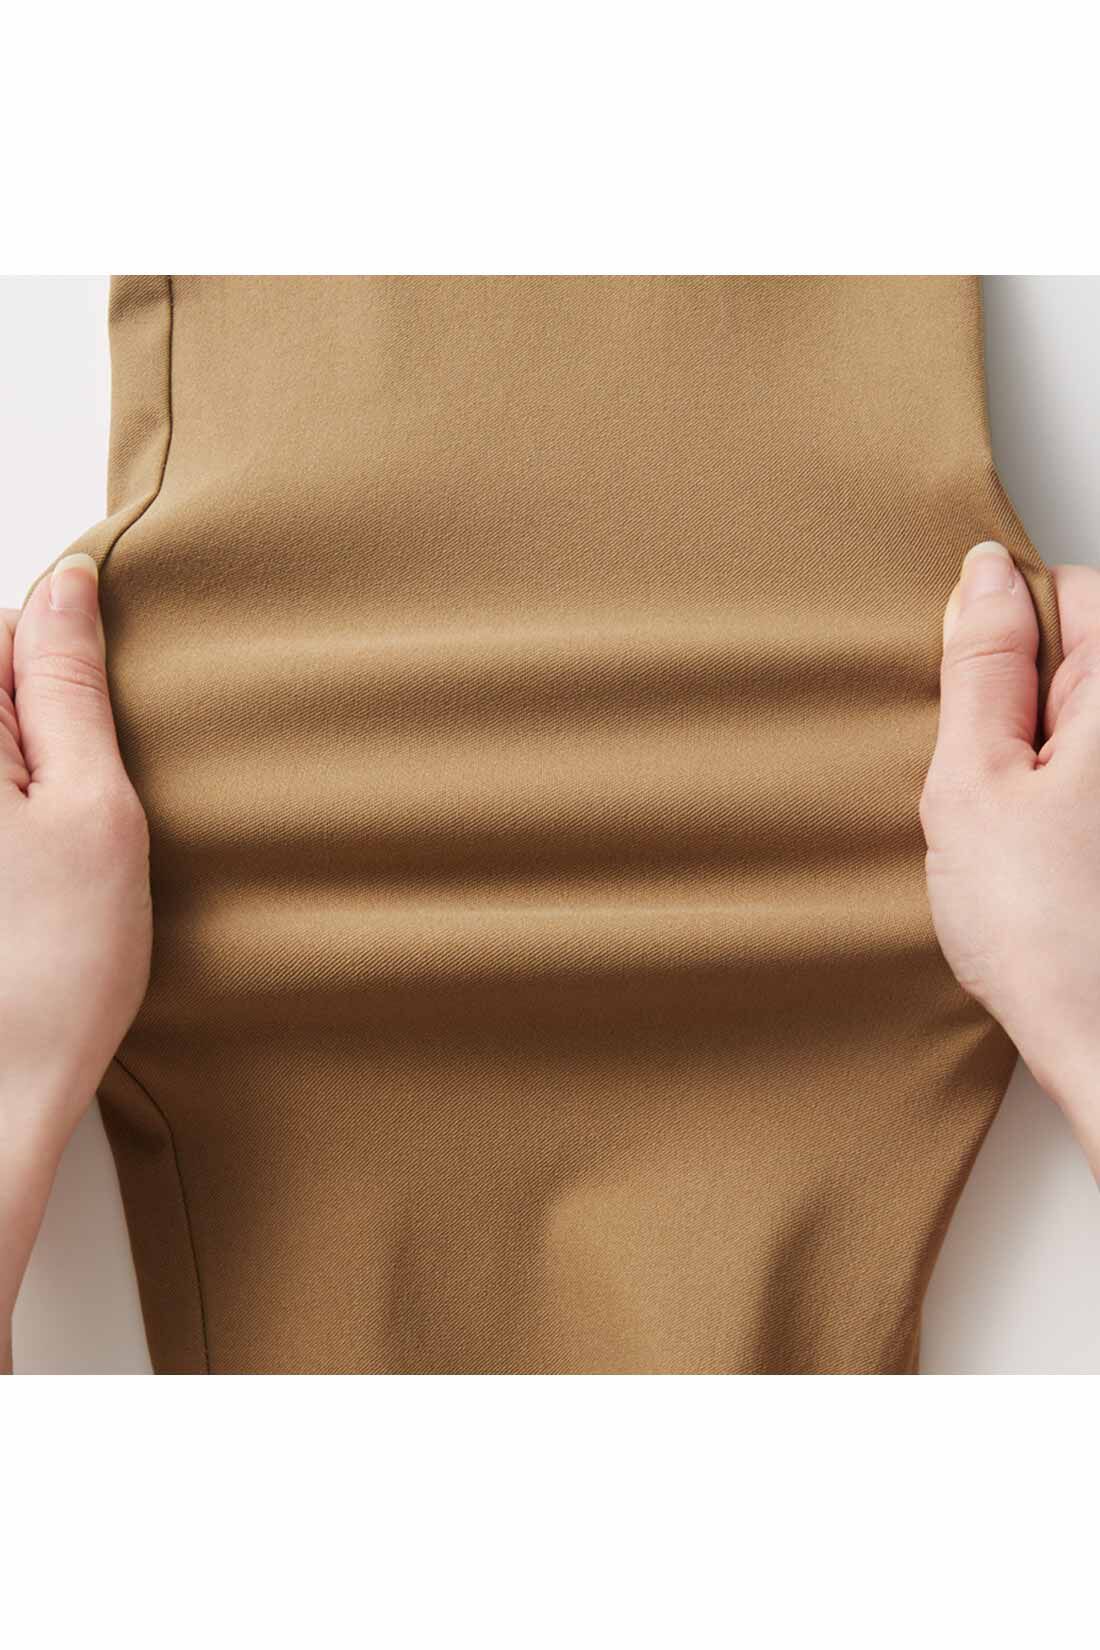 IEDIT[イディット]　ウエストメッシュで快適 ストレッチ布はく素材の美脚レギンスパンツ〈ブラック〉|からだの動きに合わせて、しなやかに伸びるからノンストレス。 ※お届けするカラーとは異なります。